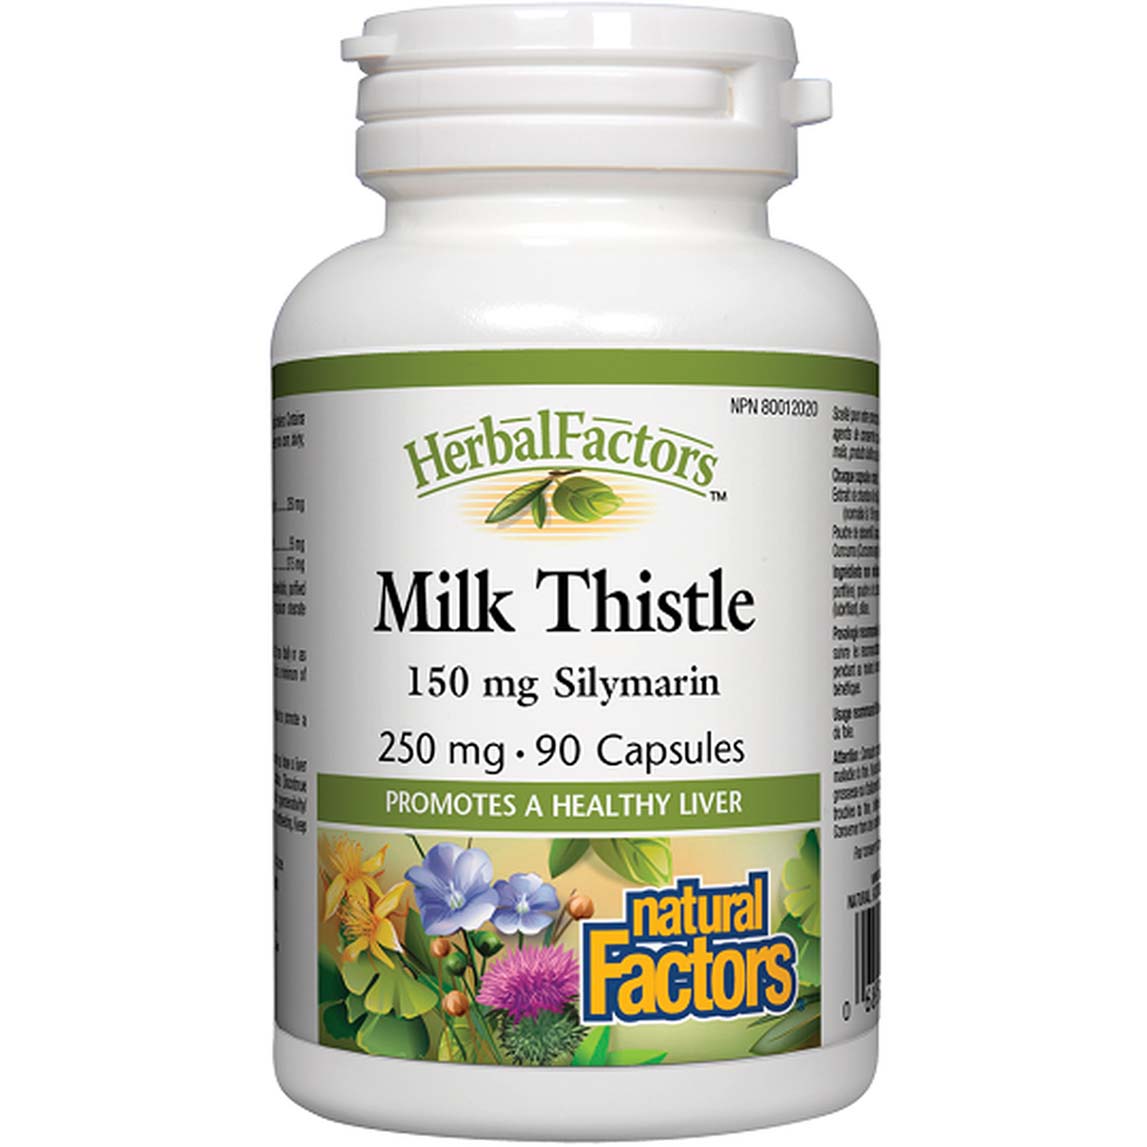 Natural Factors Milk Thistle 90 Capsules 250 mg